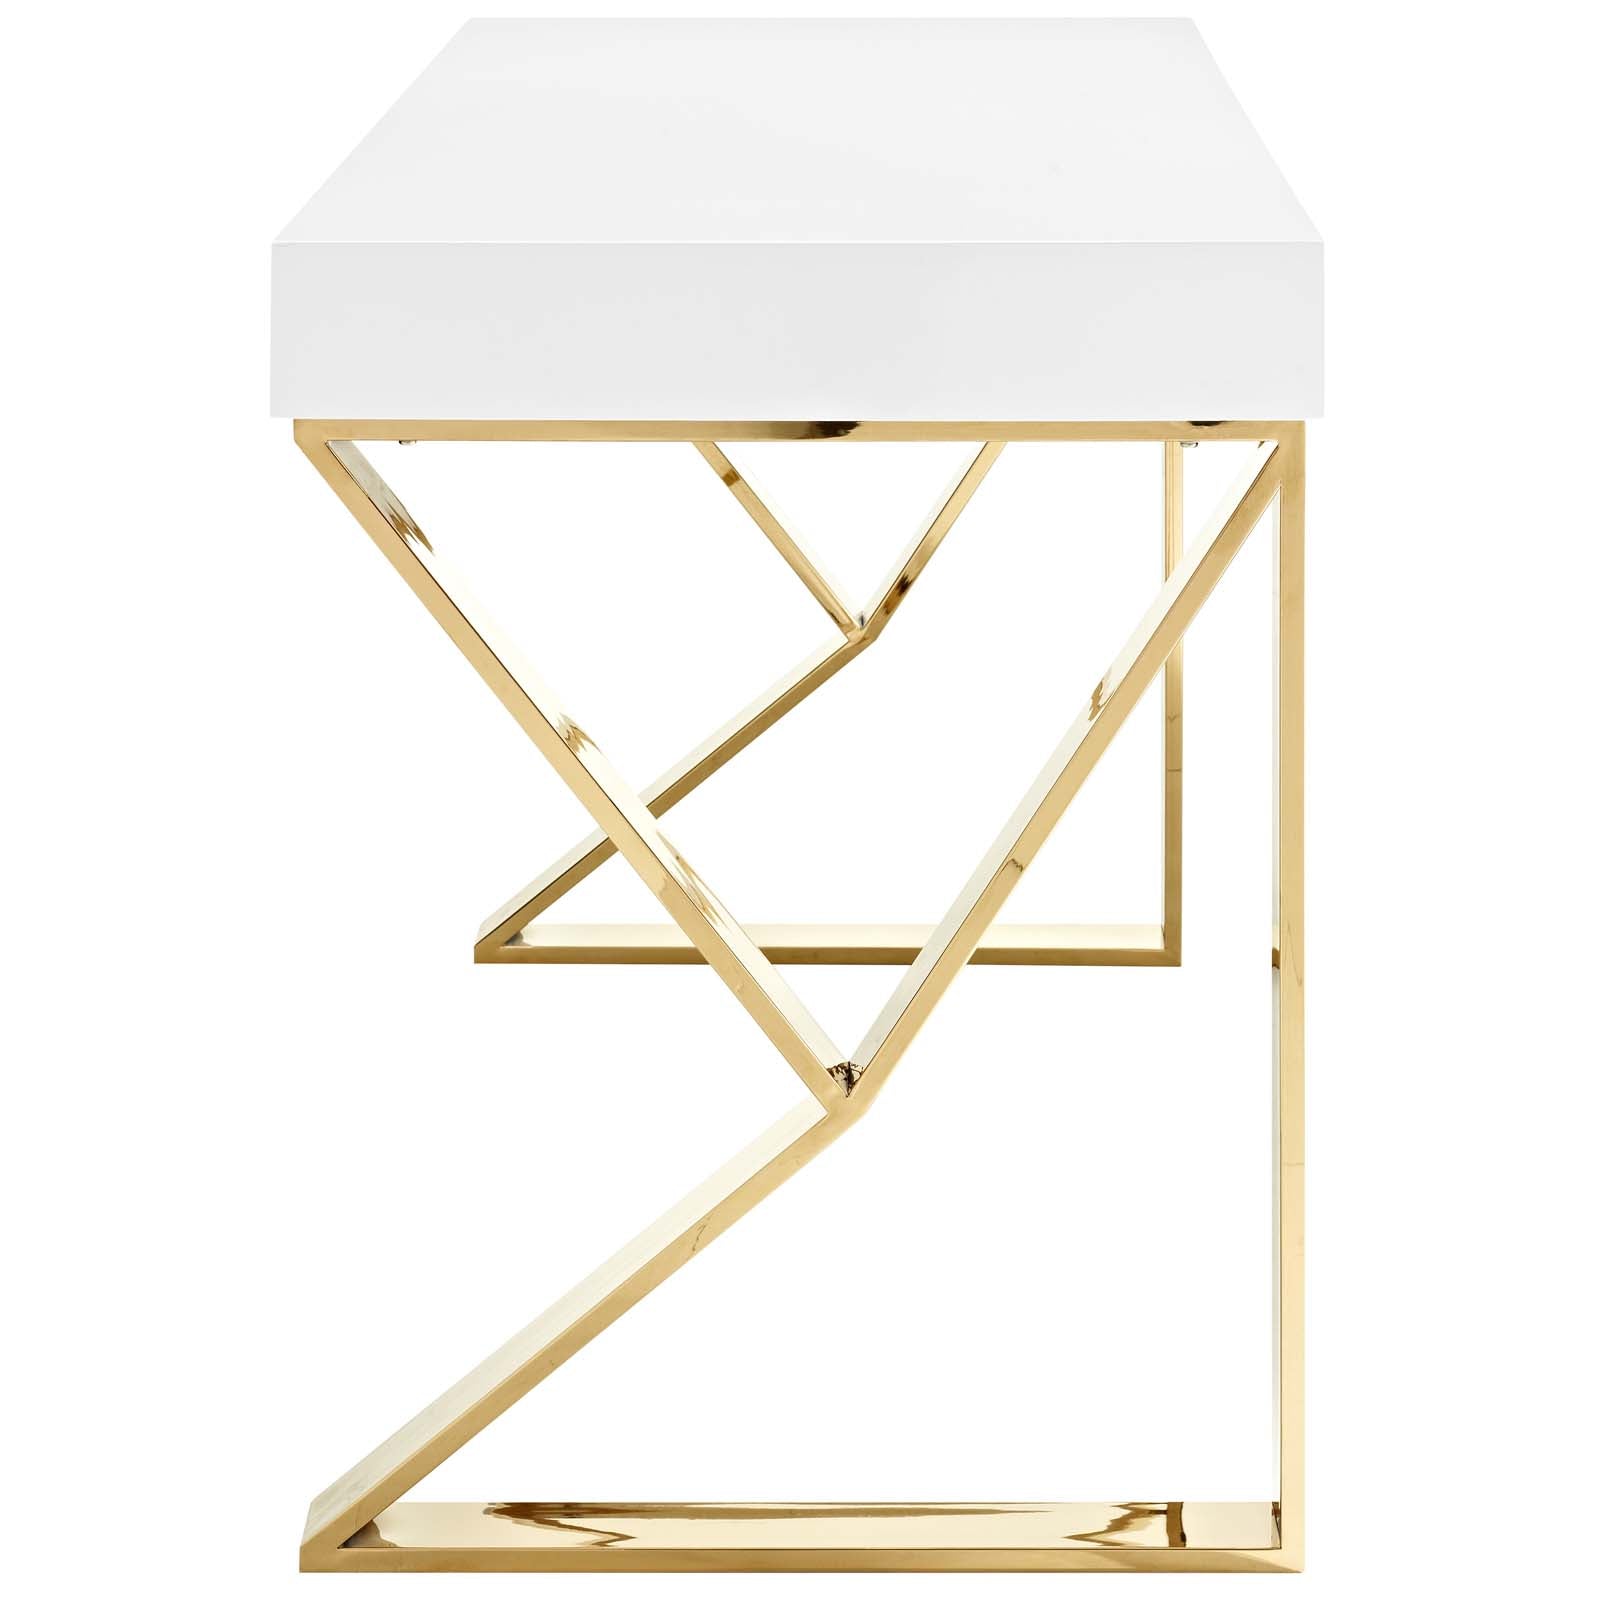 Modway Desks - Adjacent Desk White And Gold